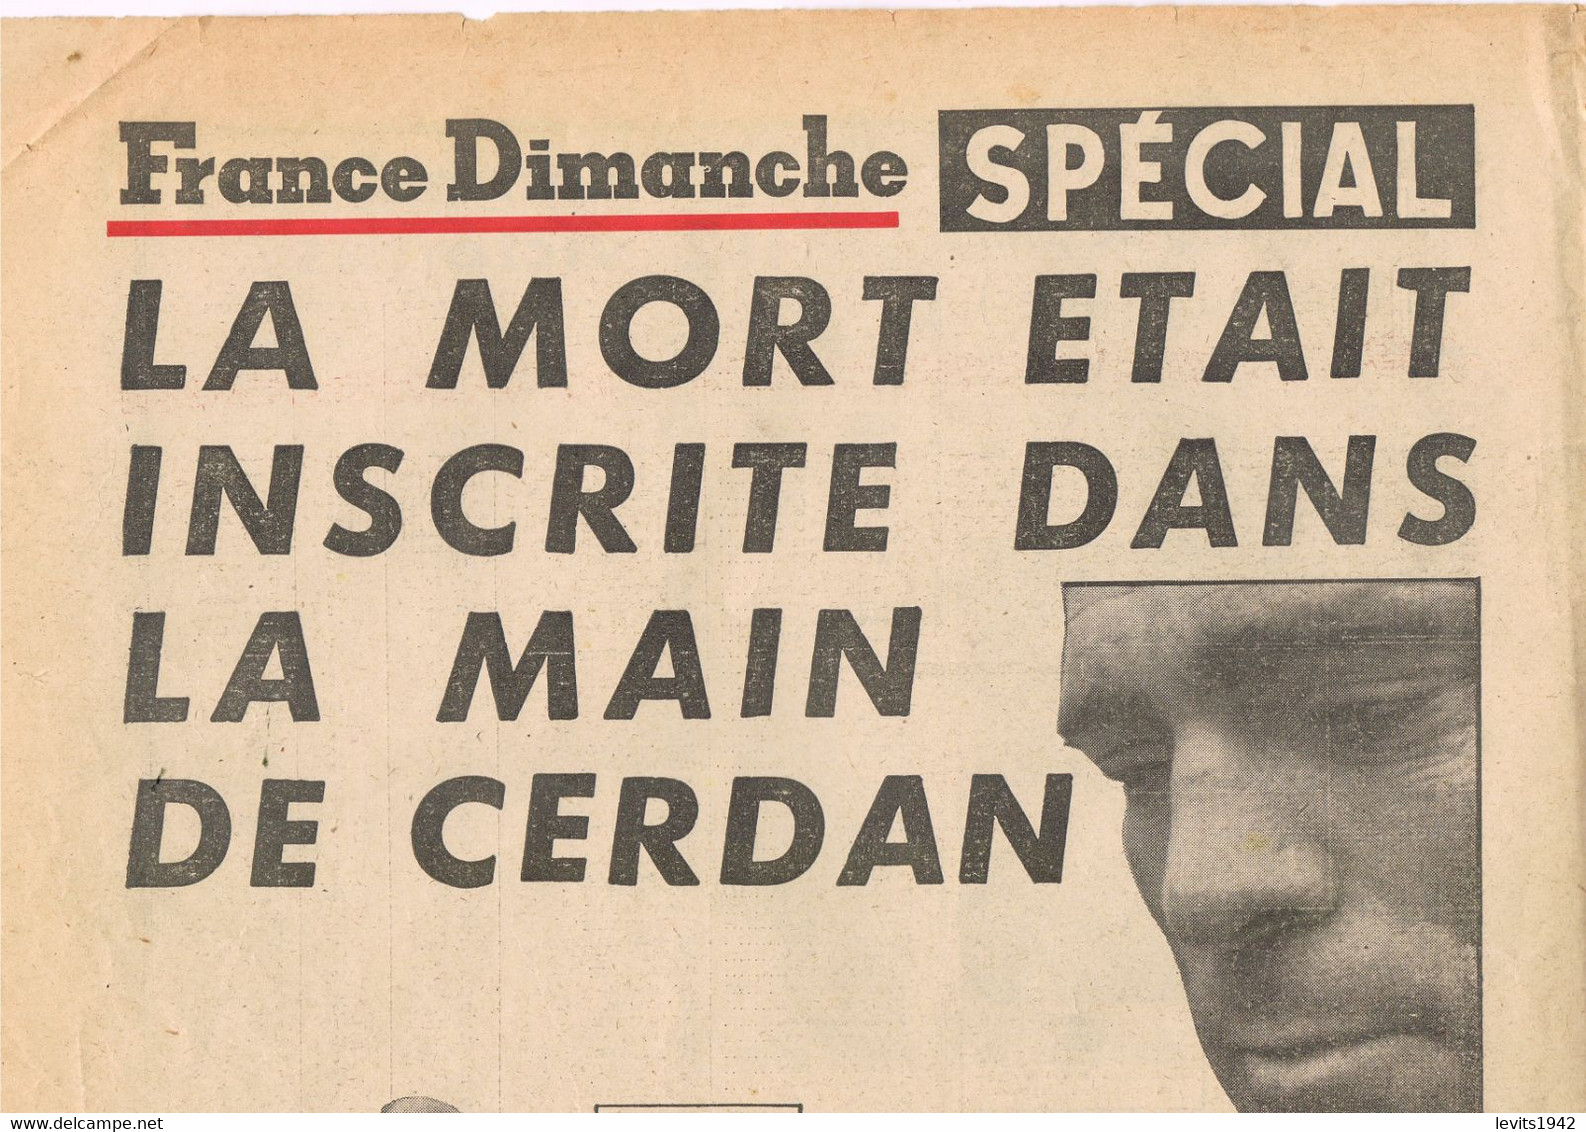 BOXE - MARCEL CERDAN - FRANCE-DIMANCHE - OCTOBRE 1949 - - Libros